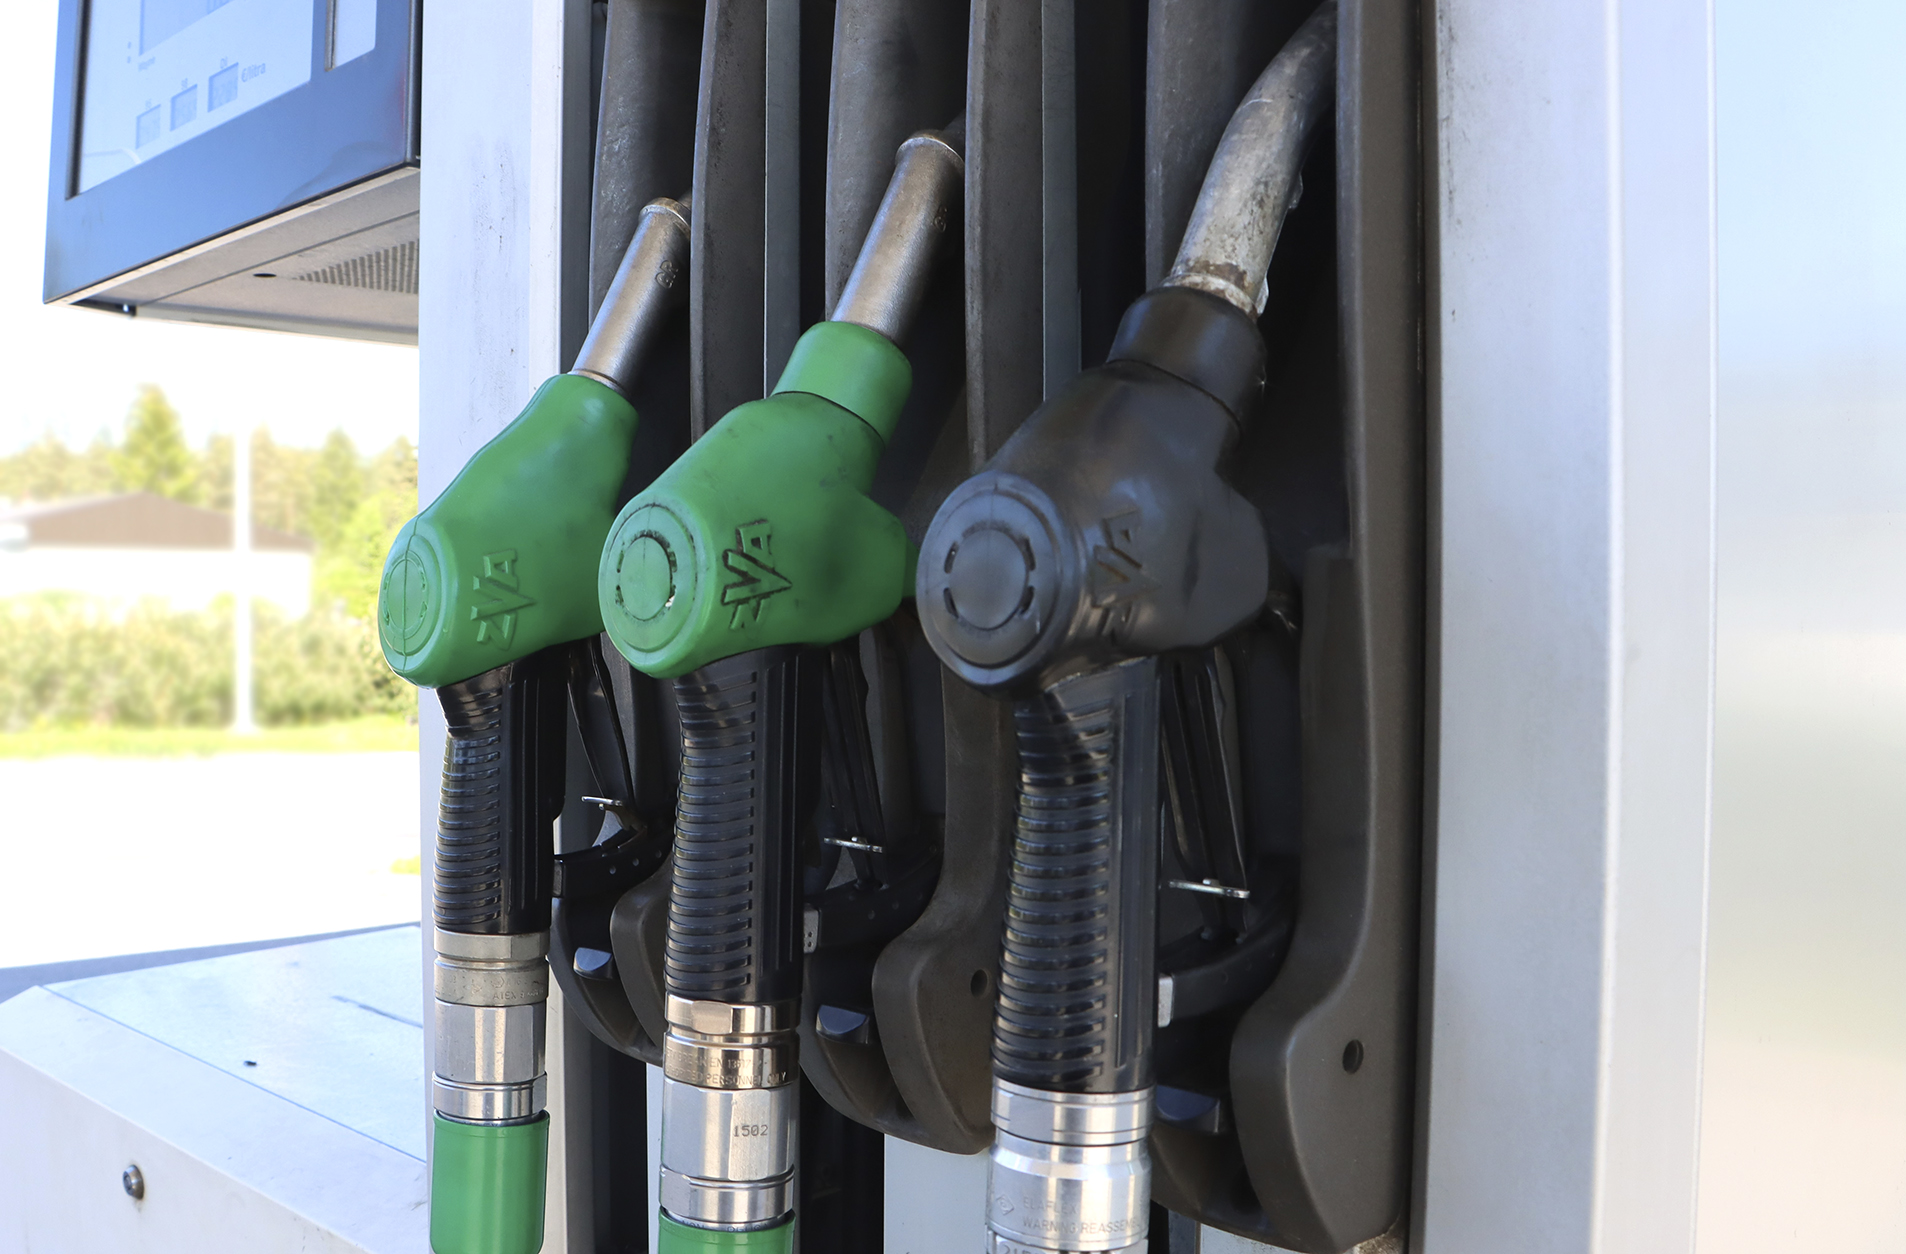 St1 lopettaa polttoaineen myynnin Sahalahden kylmäasemalla – kiinteistön  omistaja on toiveikas jatkon suhteen – Kangasalan Sanomat